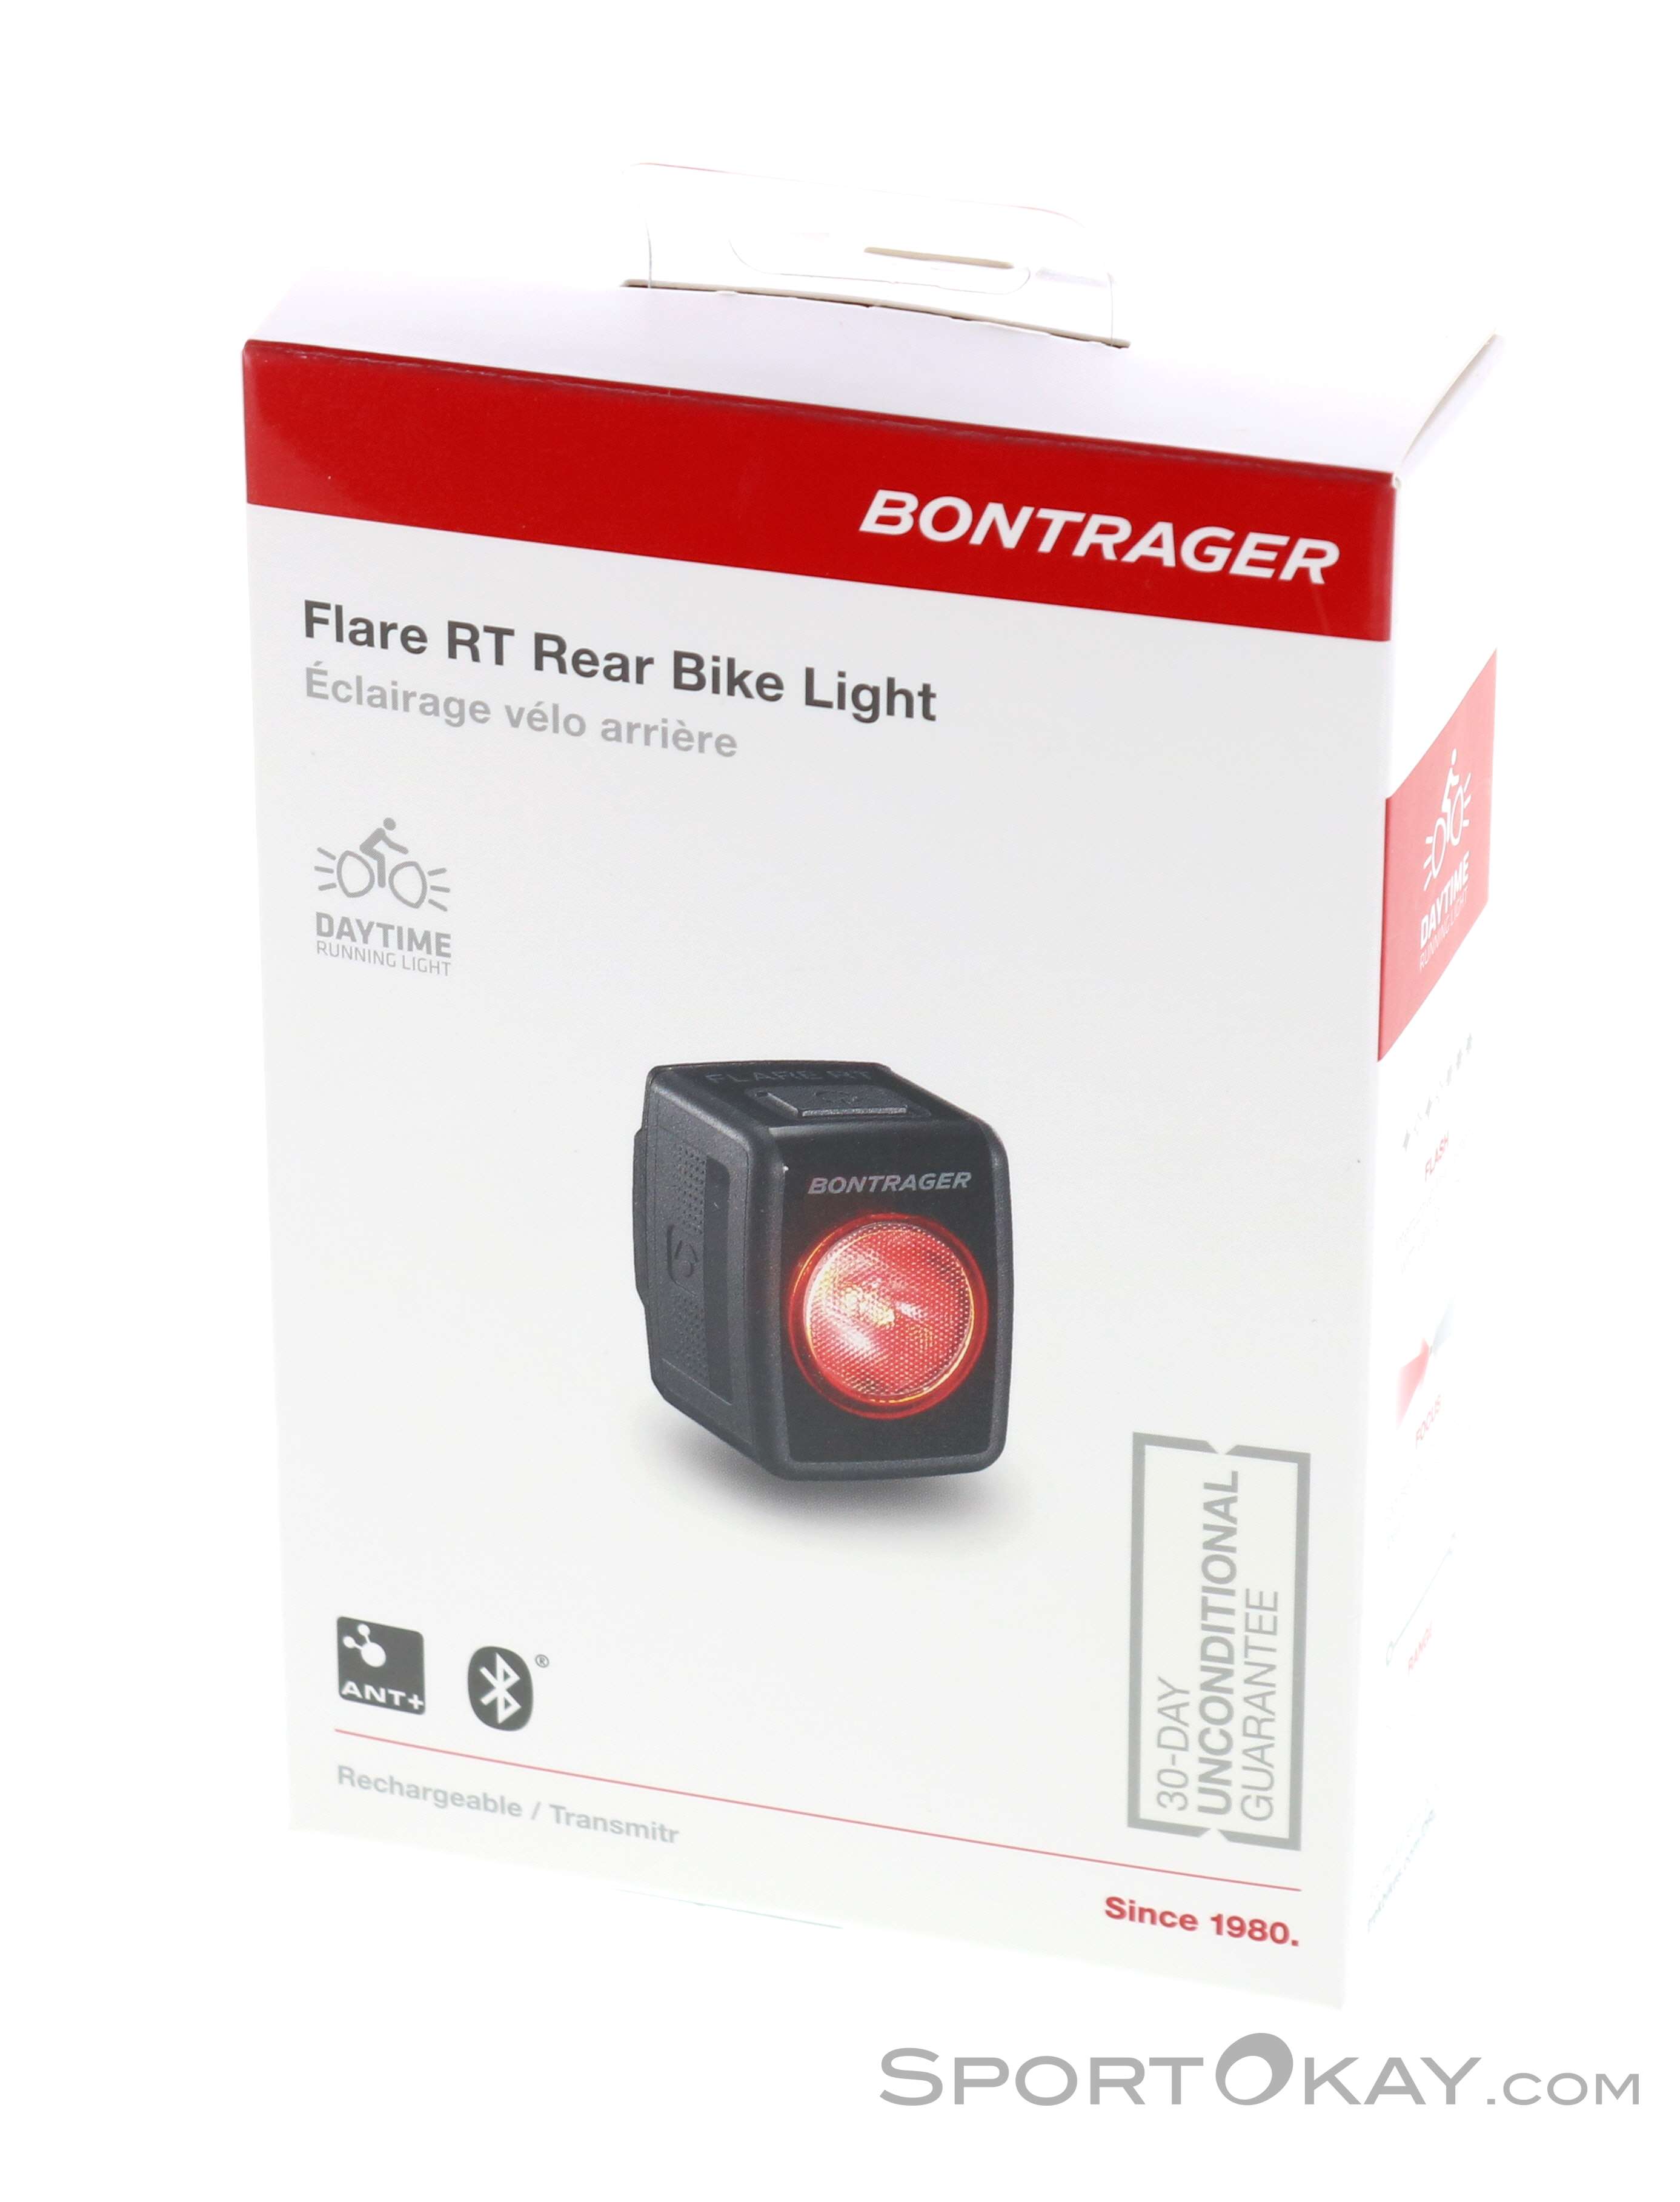 Bontrager Flare RT Bike Light Rear - Lights - Digital - Bike - All